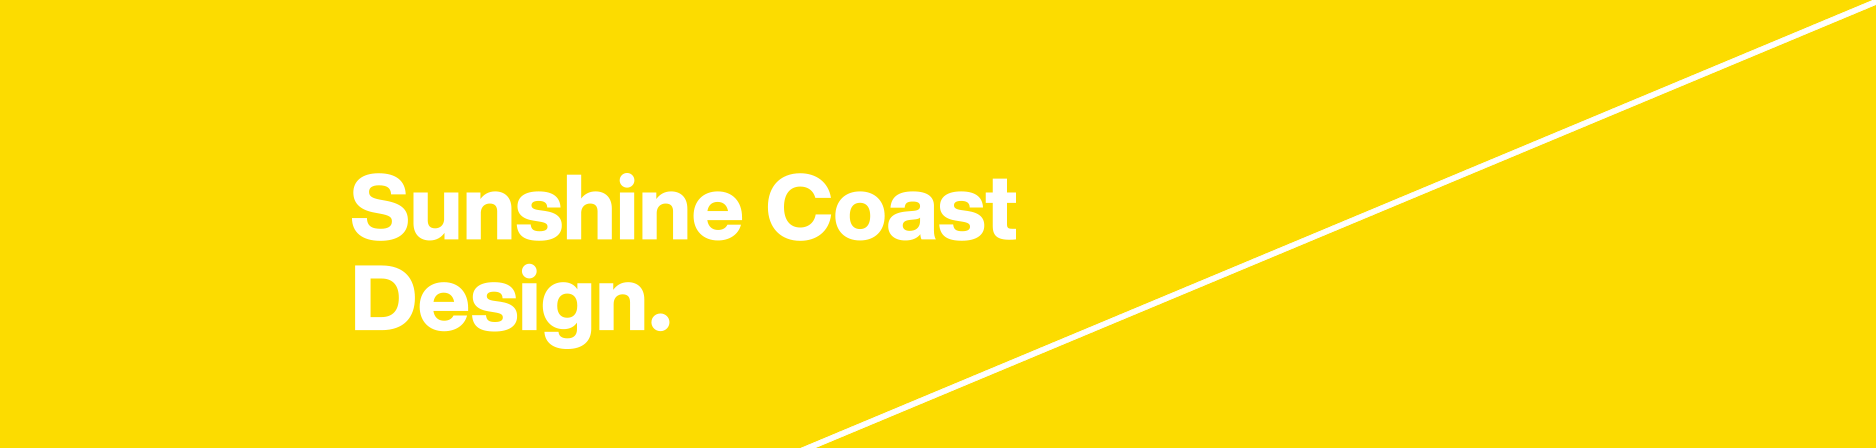 Sunshine Coast design